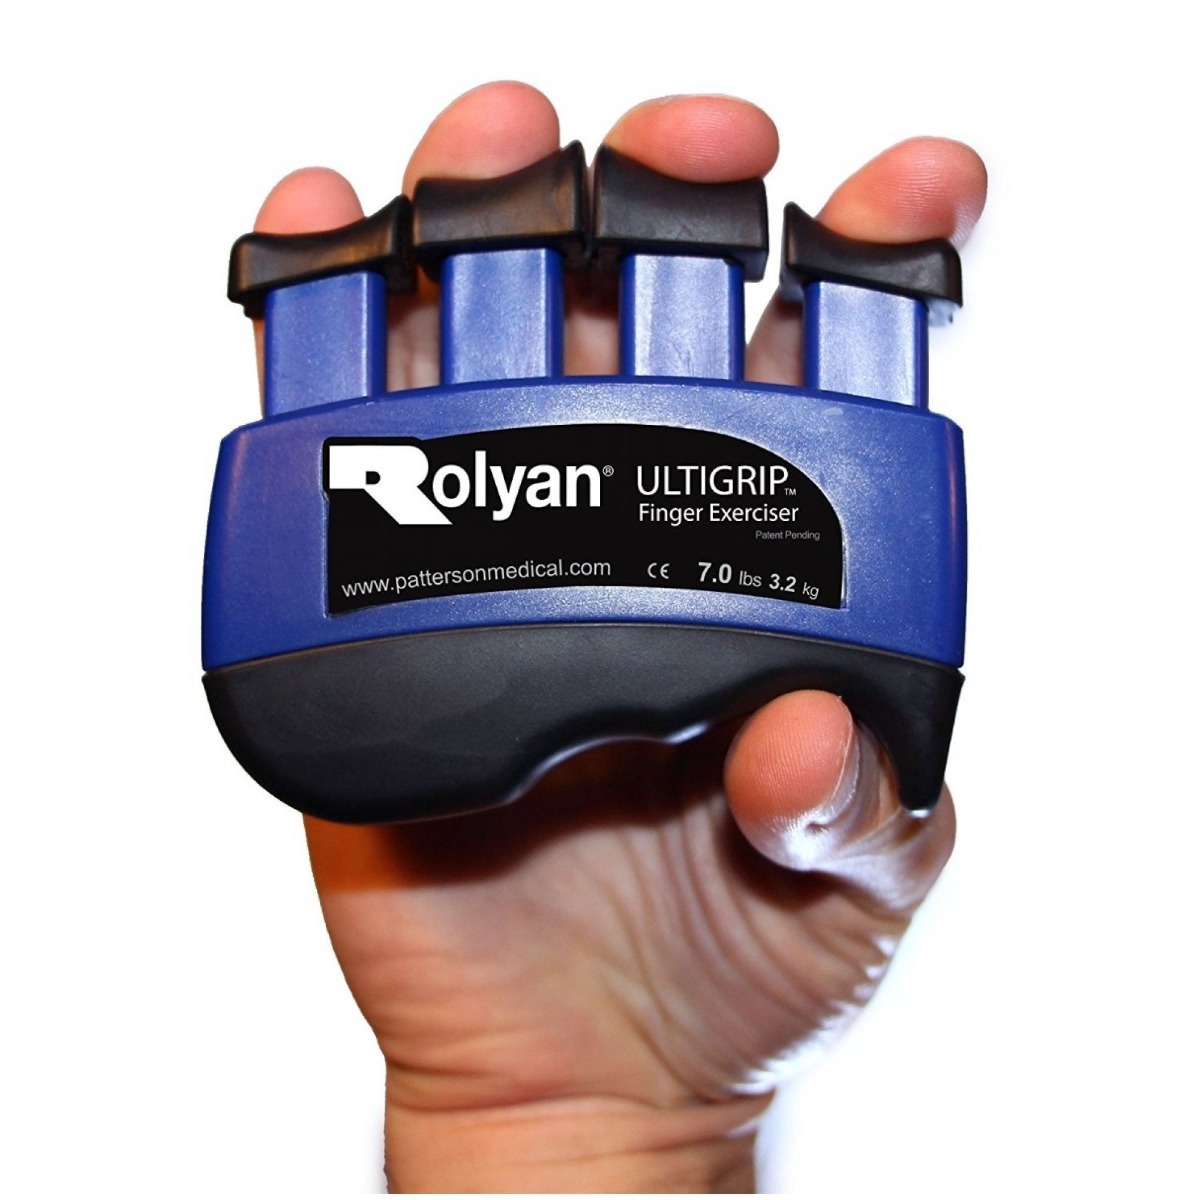 Rolyan Ultigrip Finger Exercisers